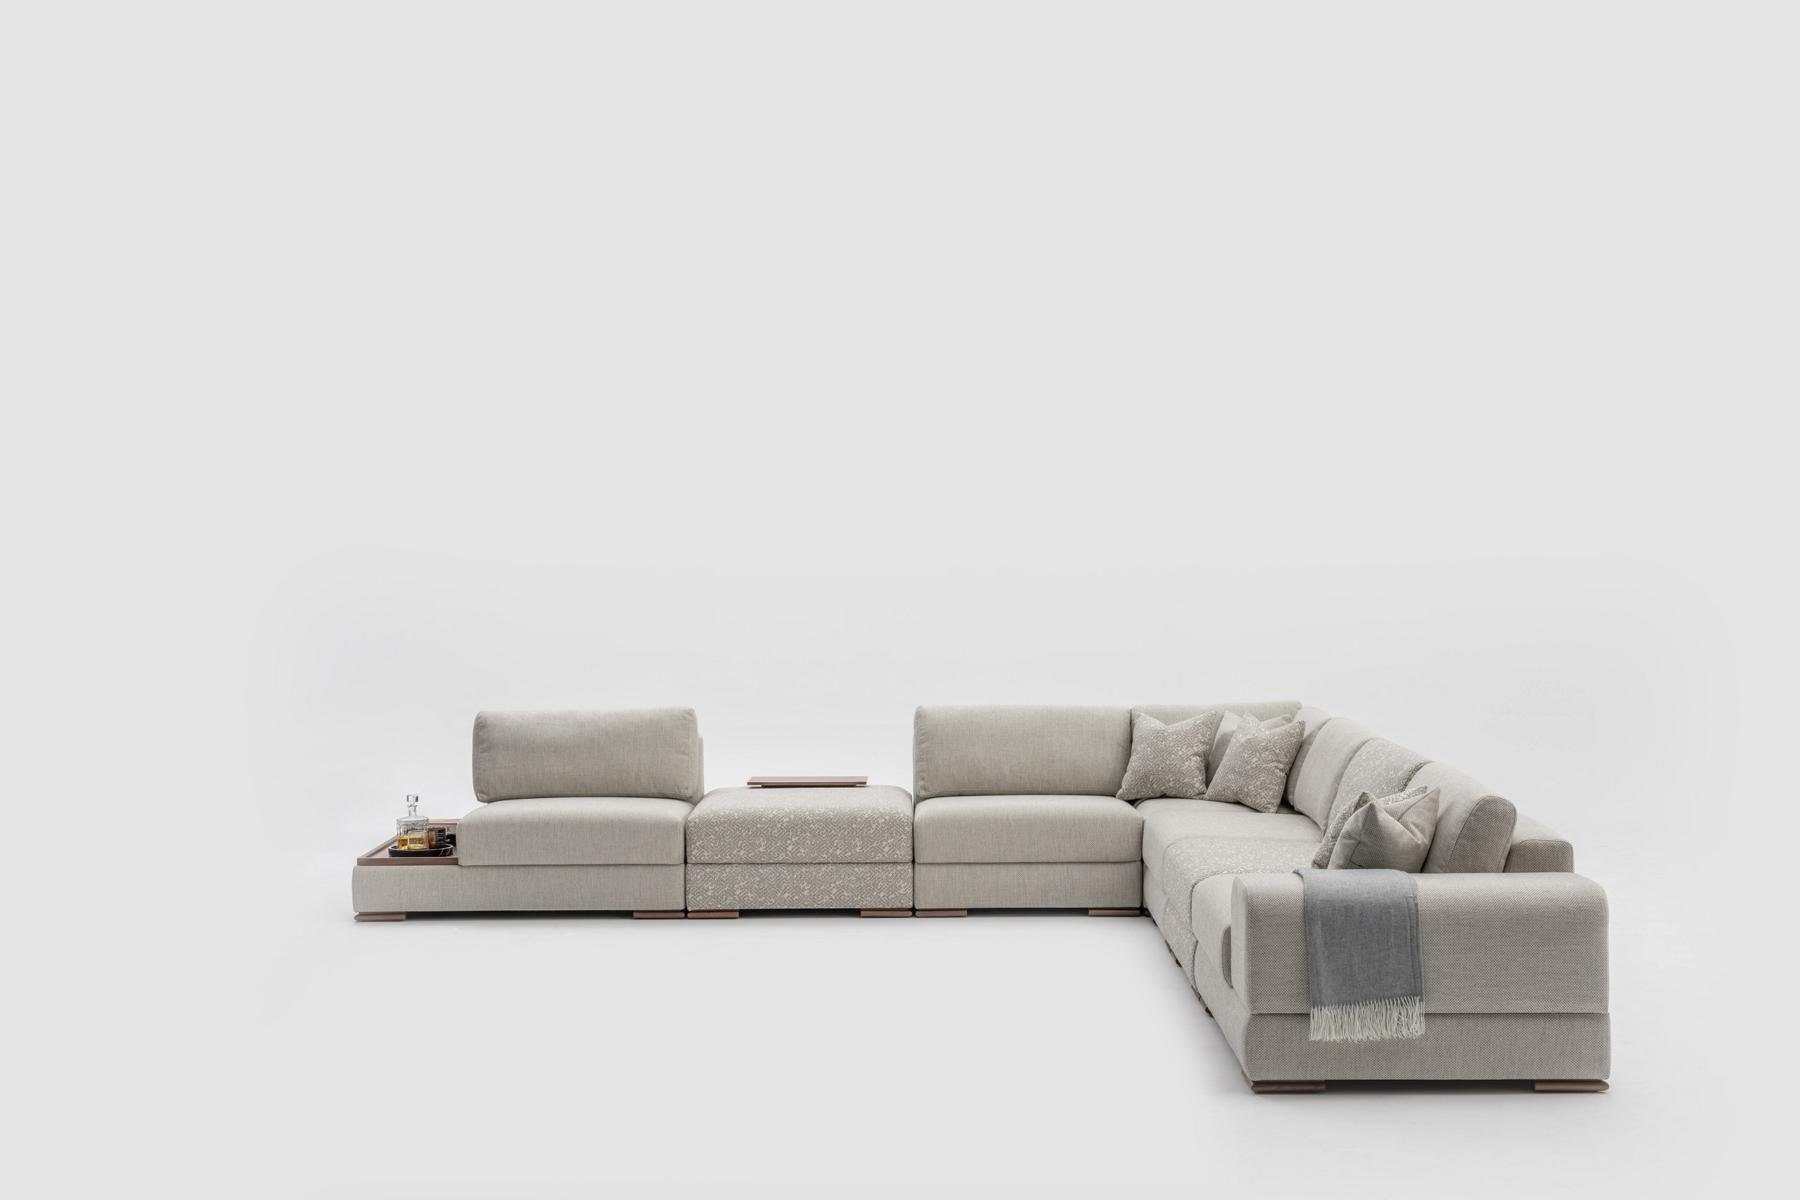 JVmoebel Ecksofa Design Ecksofa Couch Beige Möbel Wohnzimmer Eckgarnitur, Made in Europe | Ecksofas